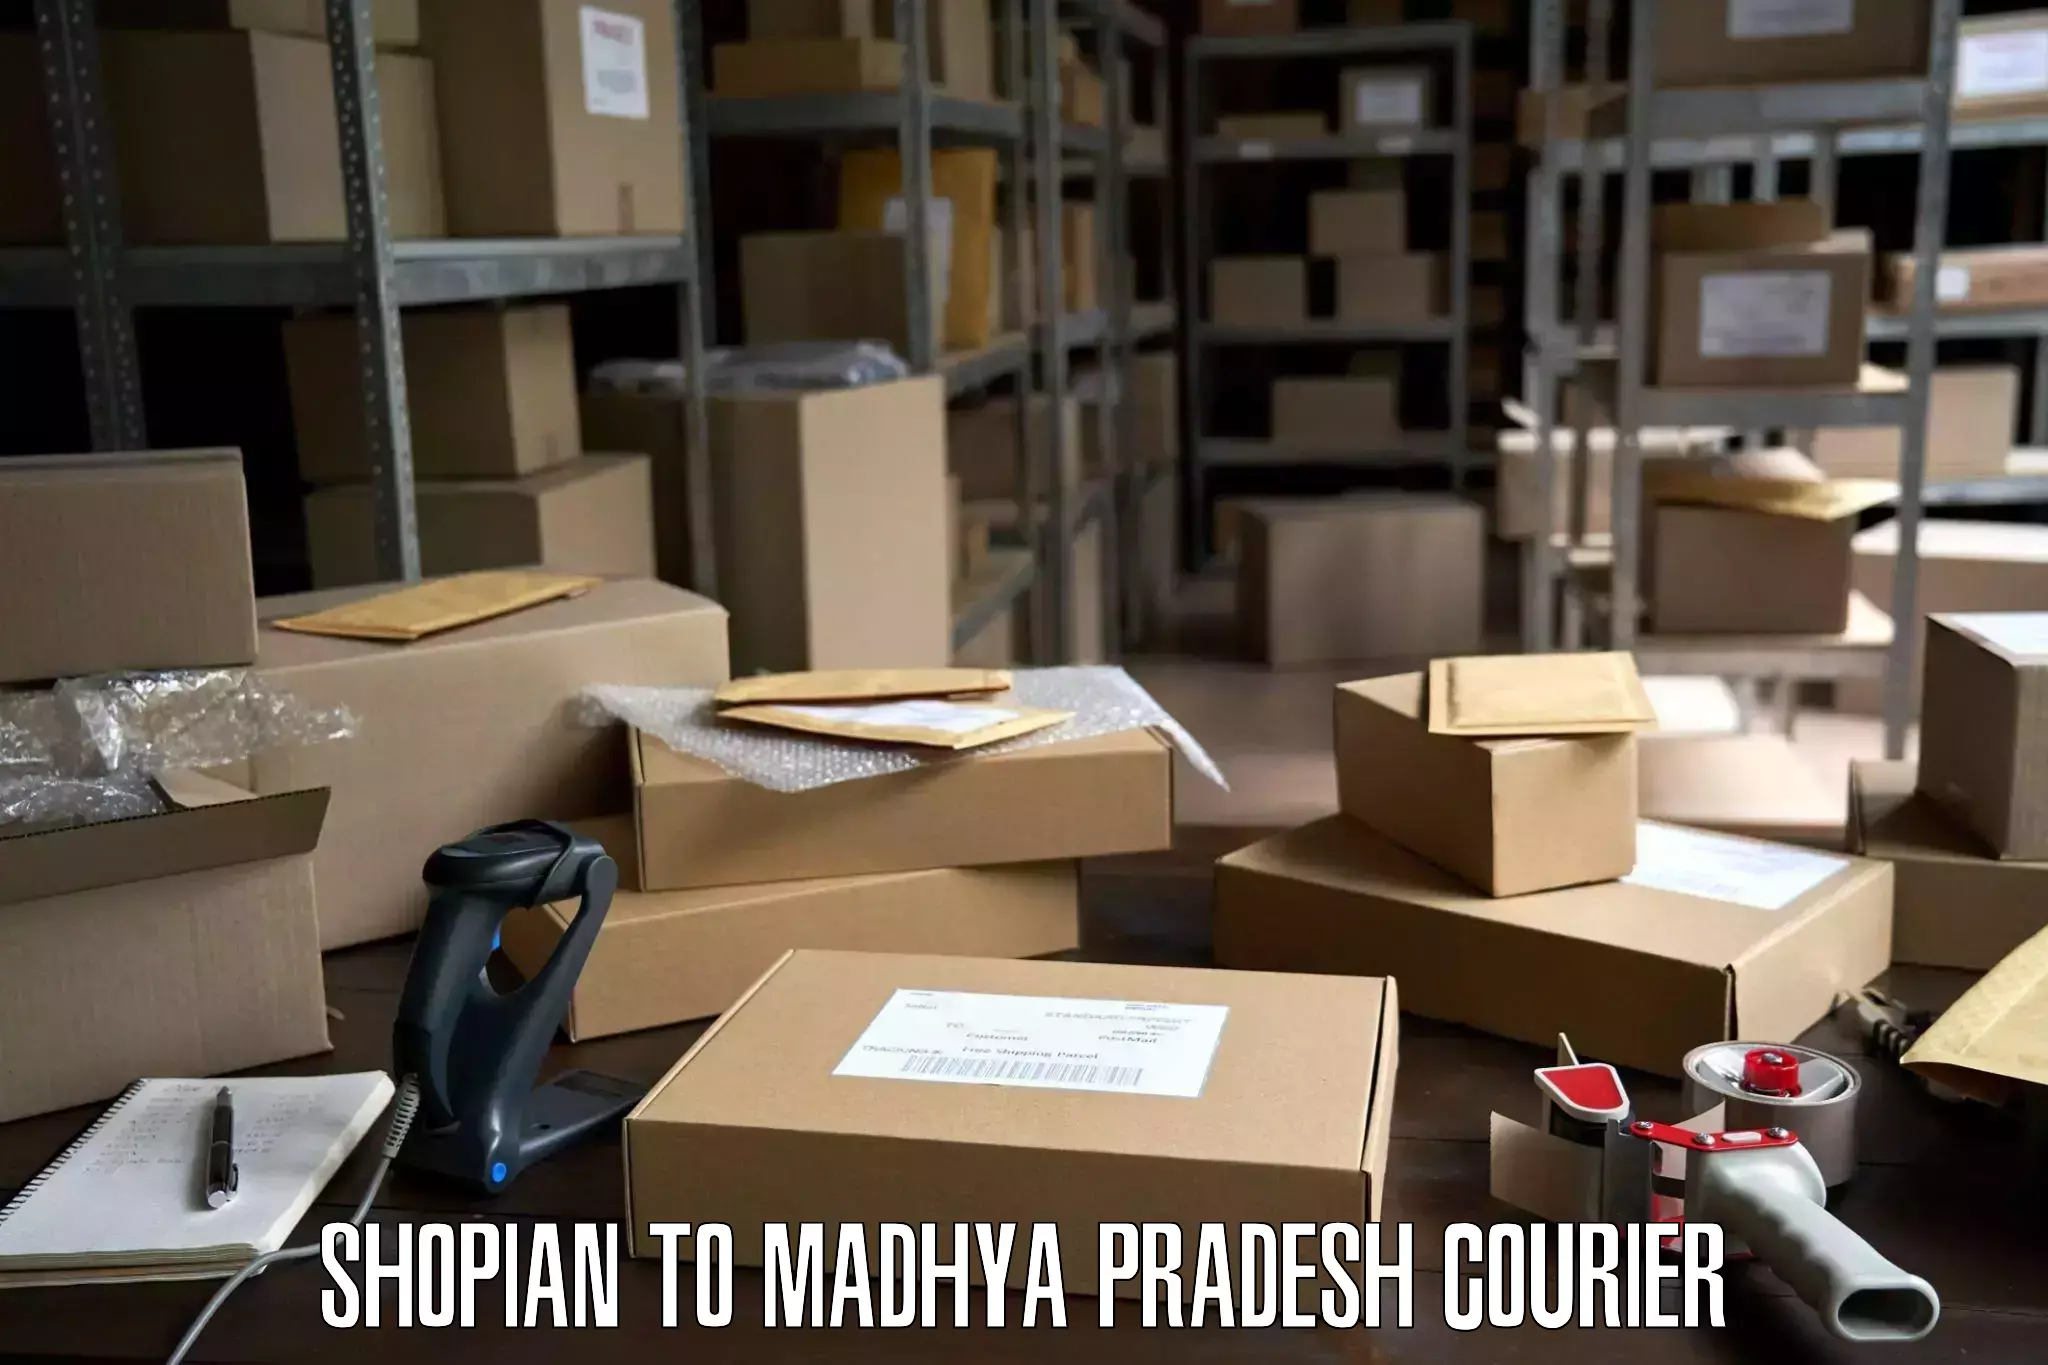 Reliable goods transport Shopian to Gosalpur